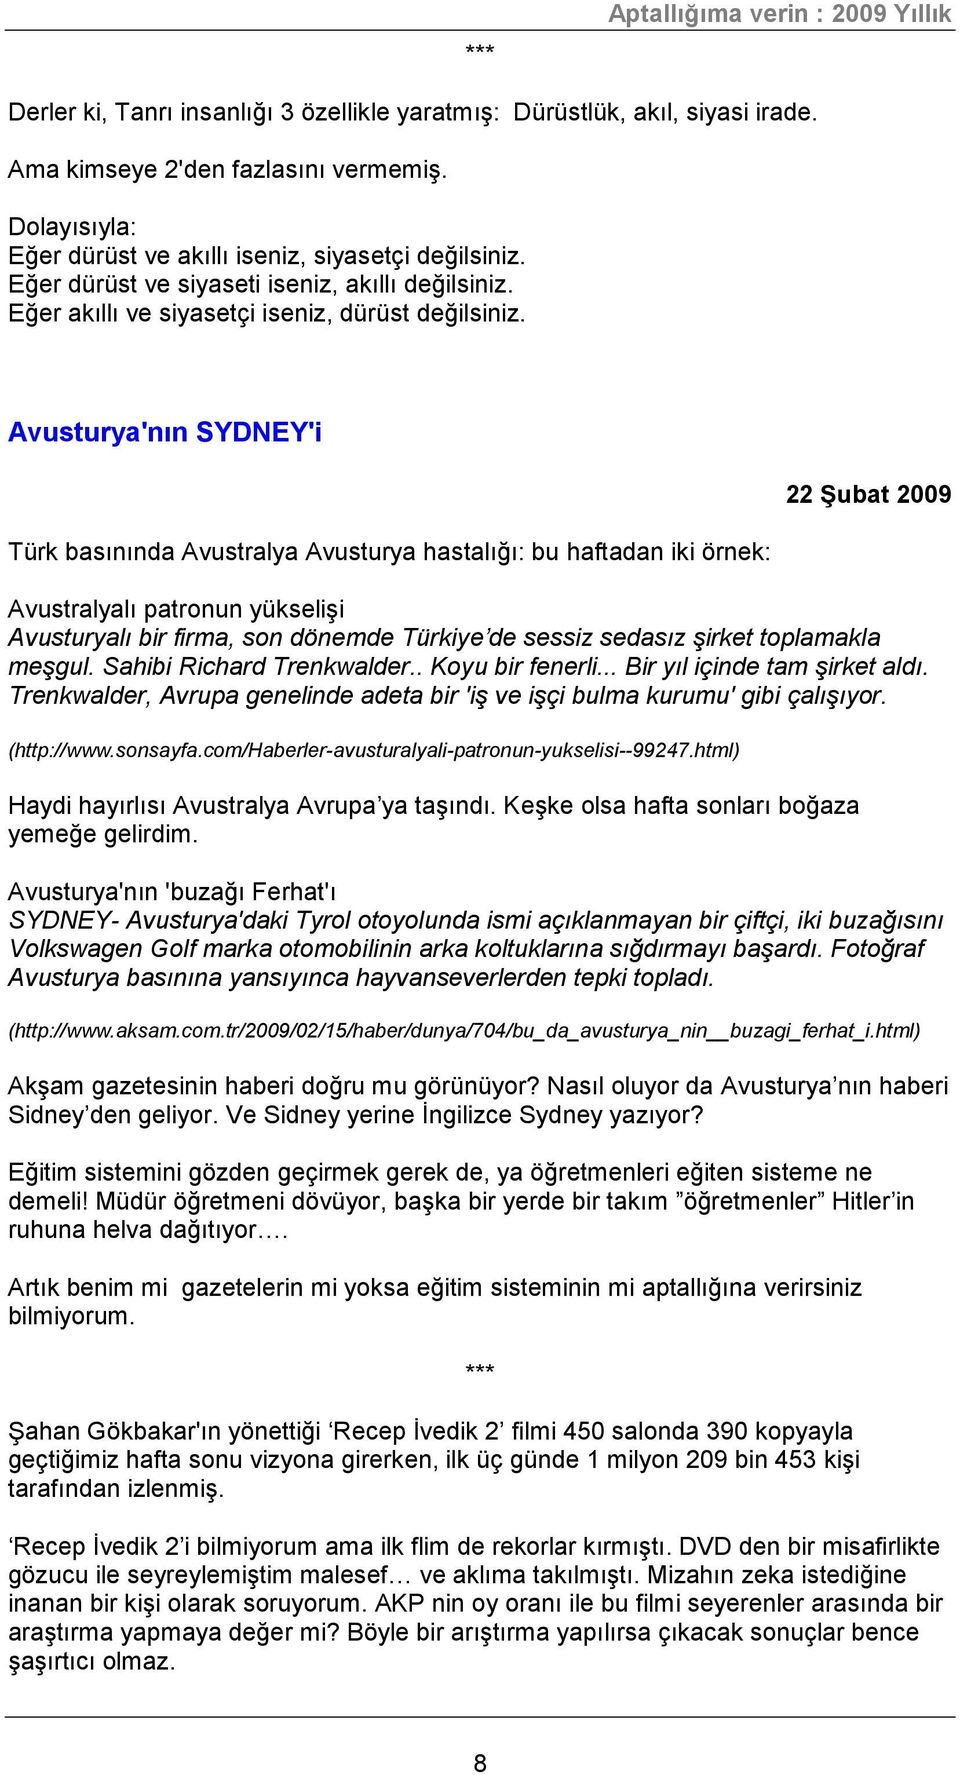 Avusturya'nın SYDNEY'i Türk basınında Avustralya Avusturya hastalığı: bu haftadan iki örnek: 22 Şubat 2009 Avustralyalı patronun yükselişi Avusturyalı bir firma, son dönemde Türkiye de sessiz sedasız